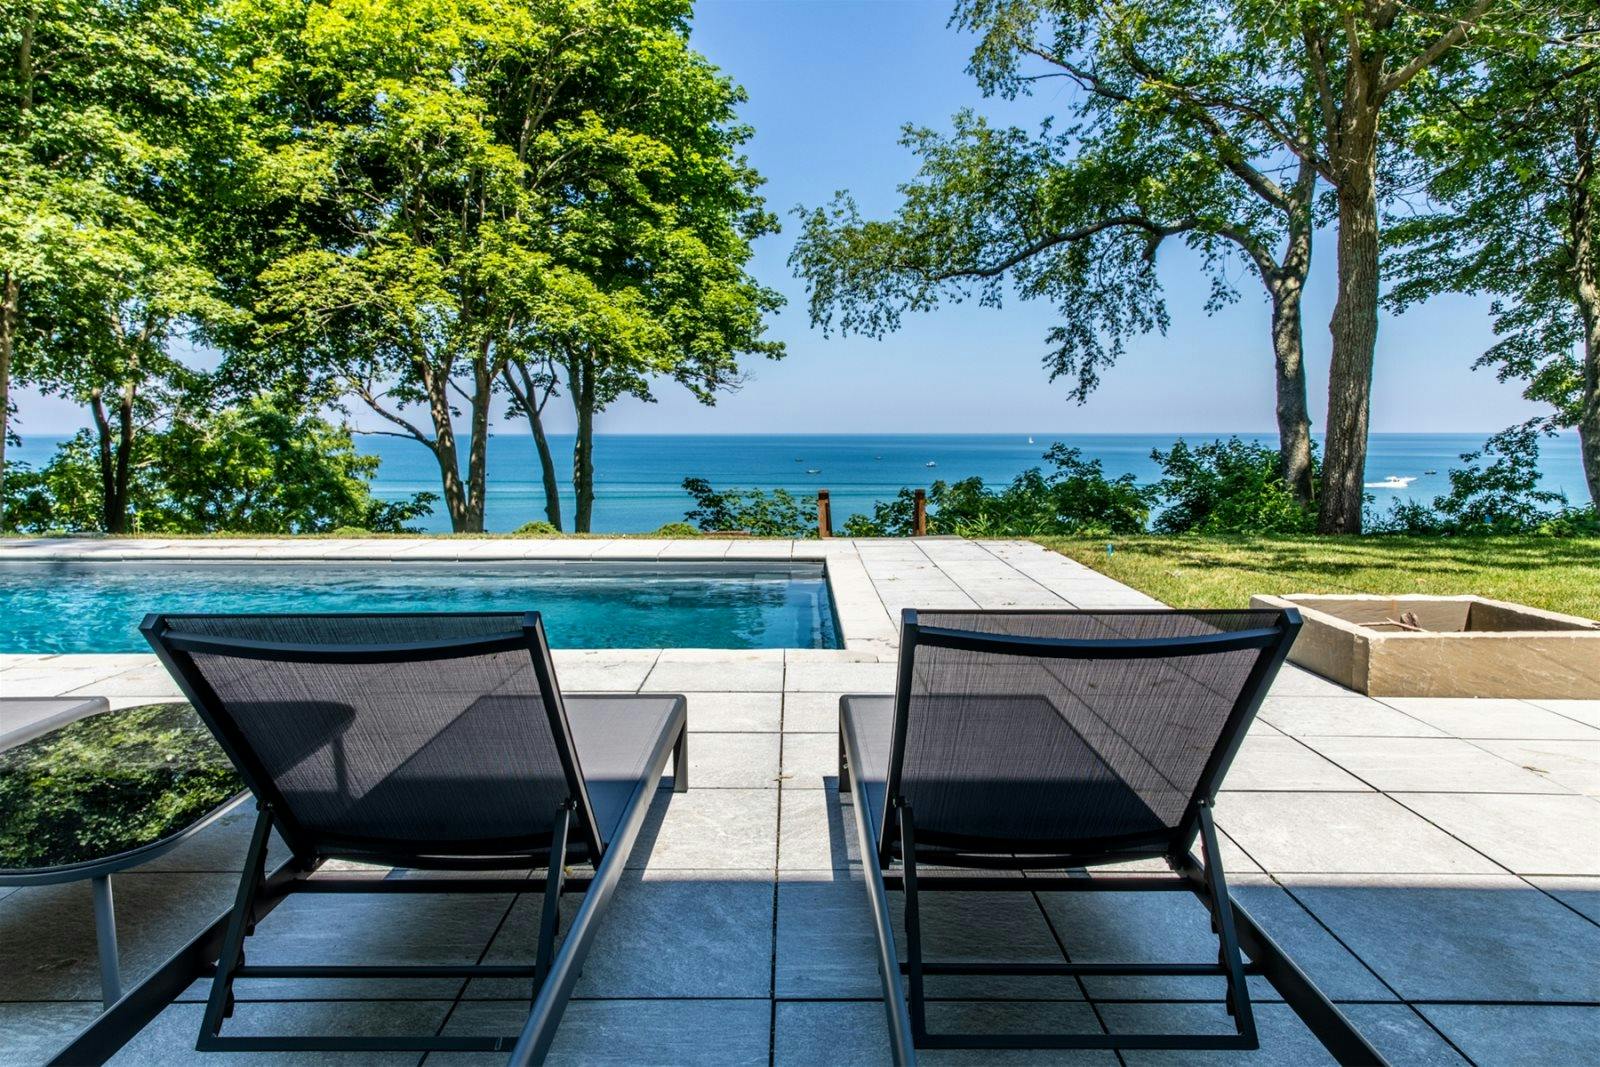 Lounge chairs sit next to outdoor pool facing Lake Michigan